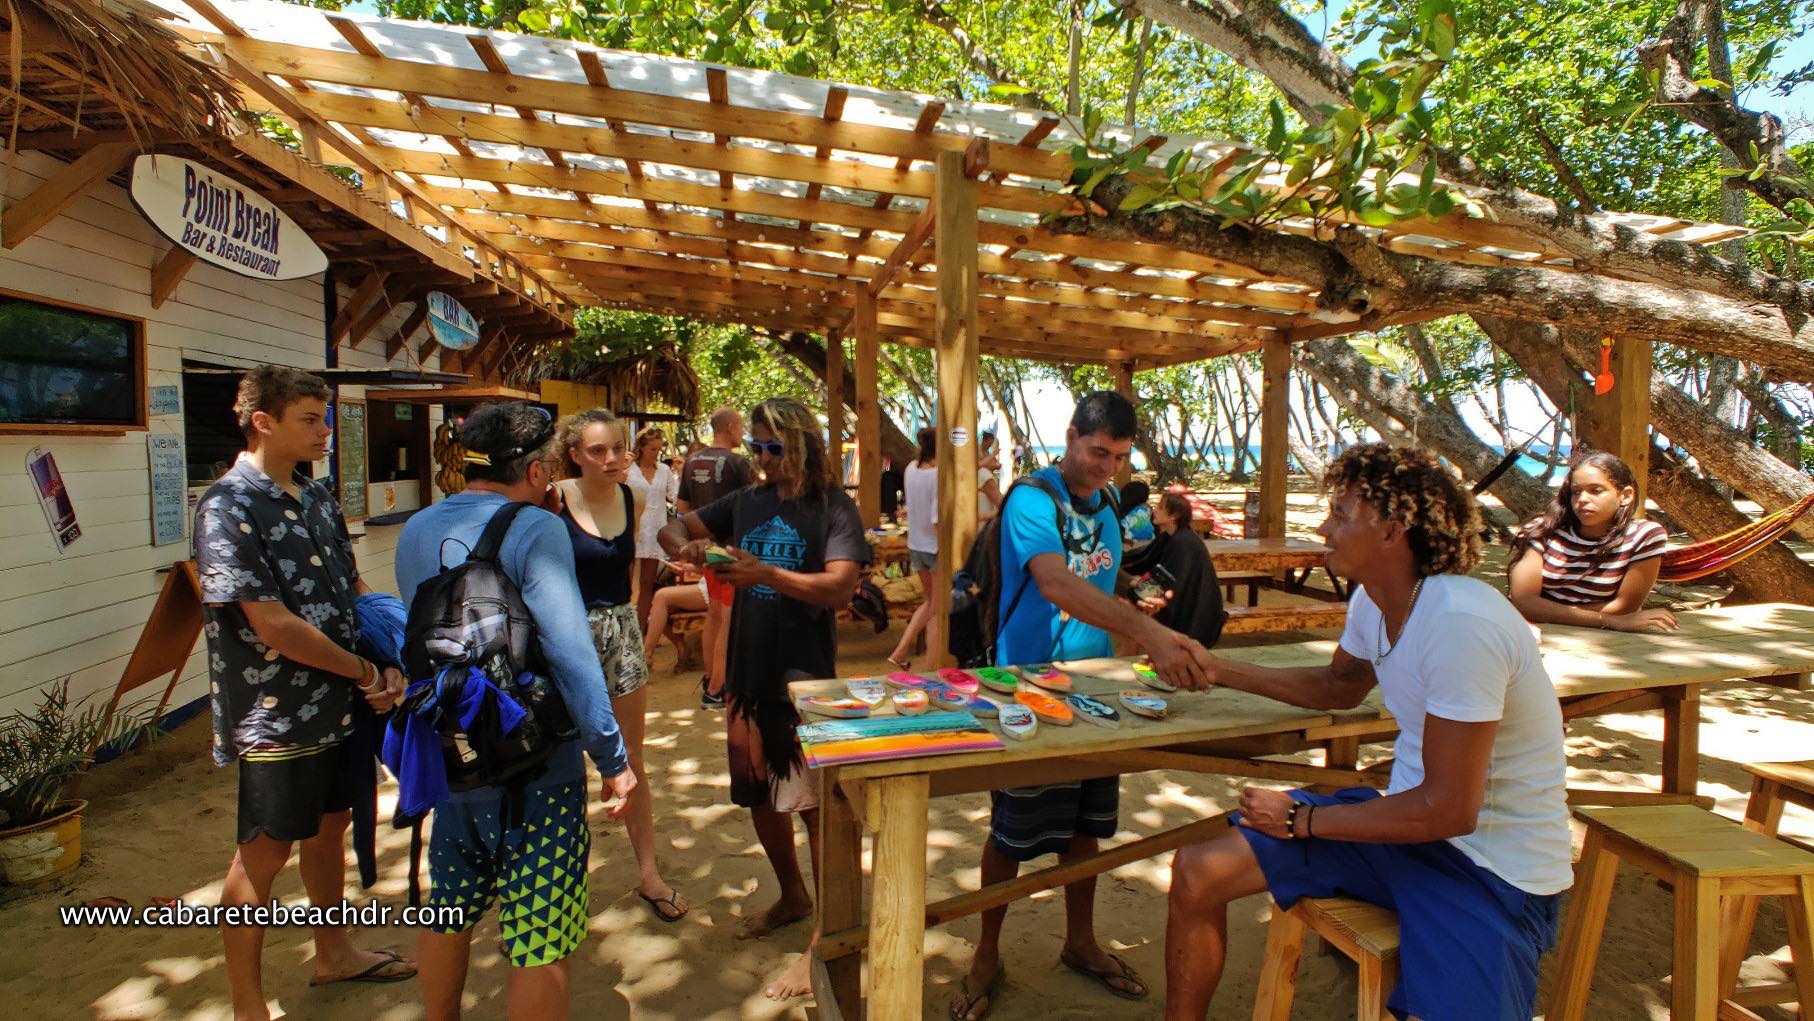 People gather around the surfing school stalls